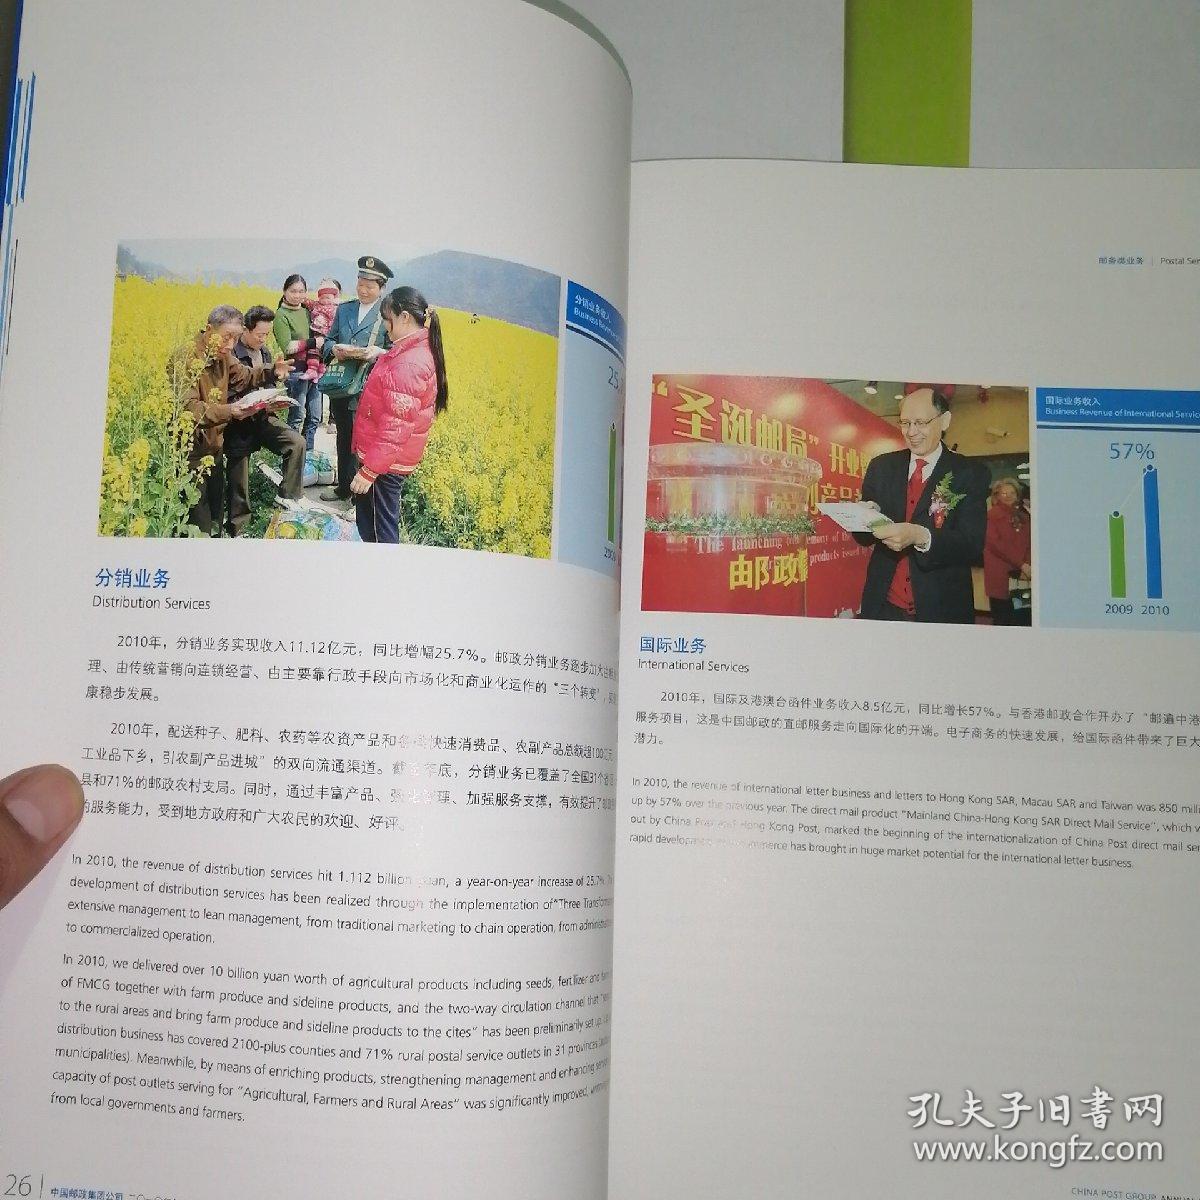 2010年中国邮政集团公司年报（含盘）